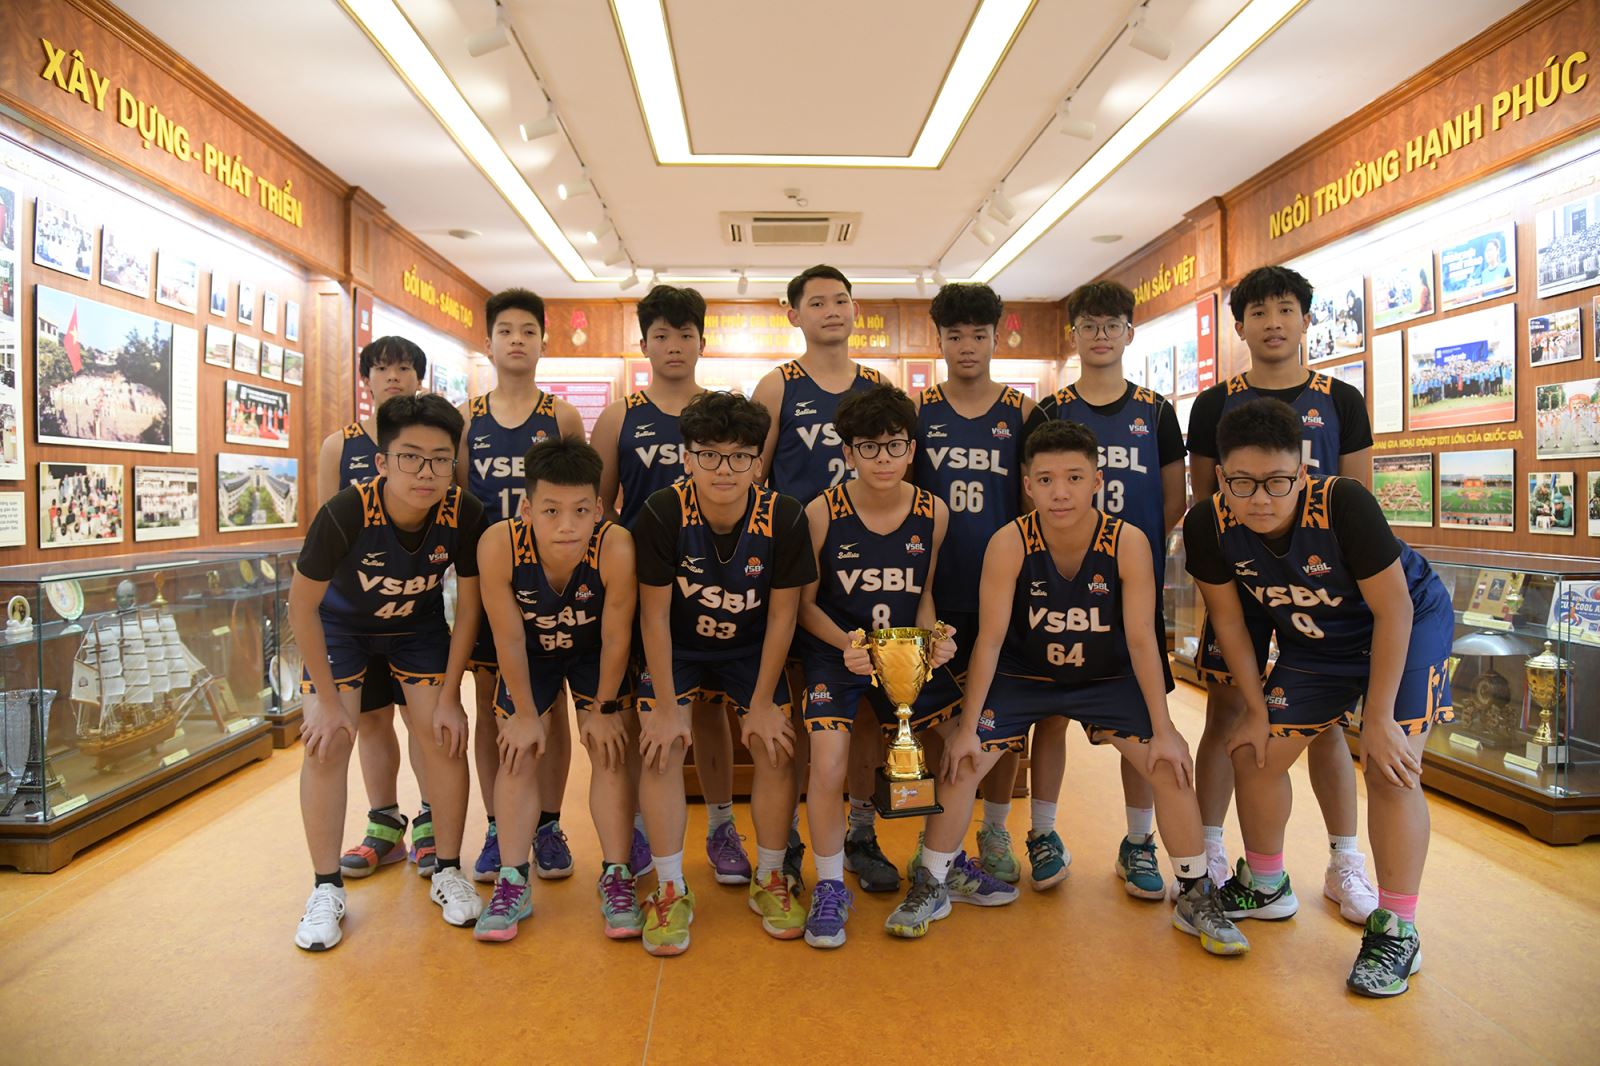 Nguyễn Nhật Minh: ước mơ của con là đội tuyển bóng rổ quốc gia